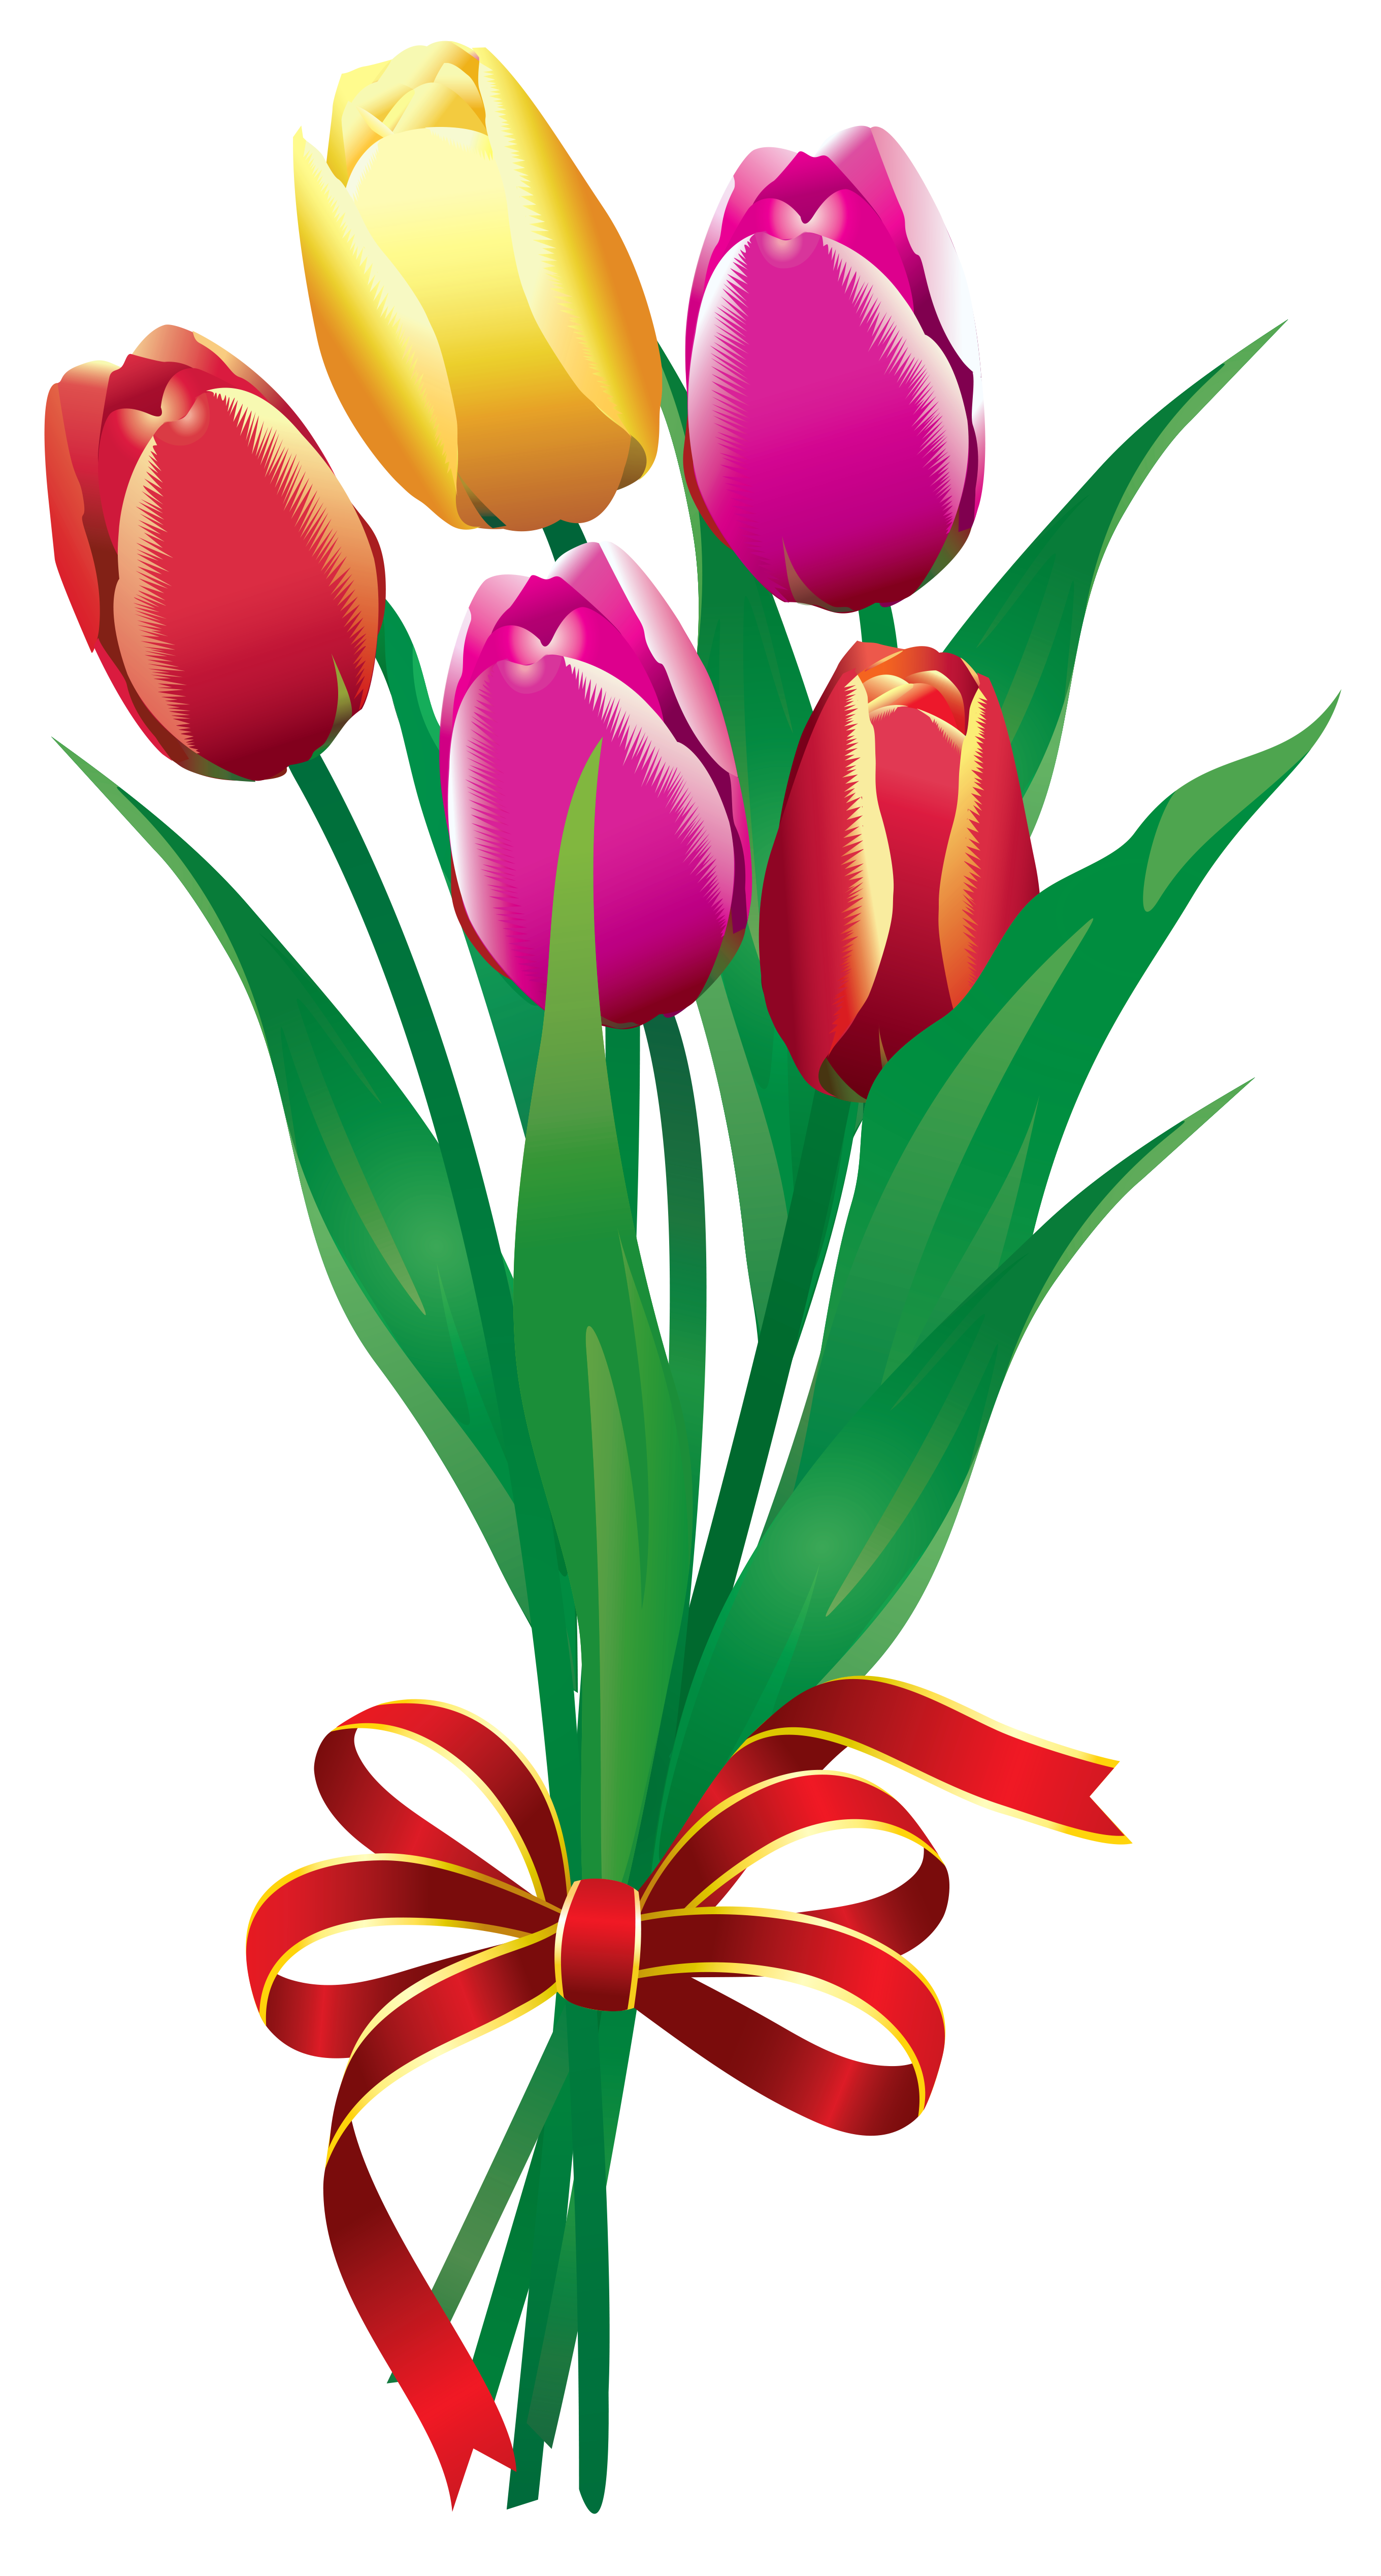 Tulips Image 